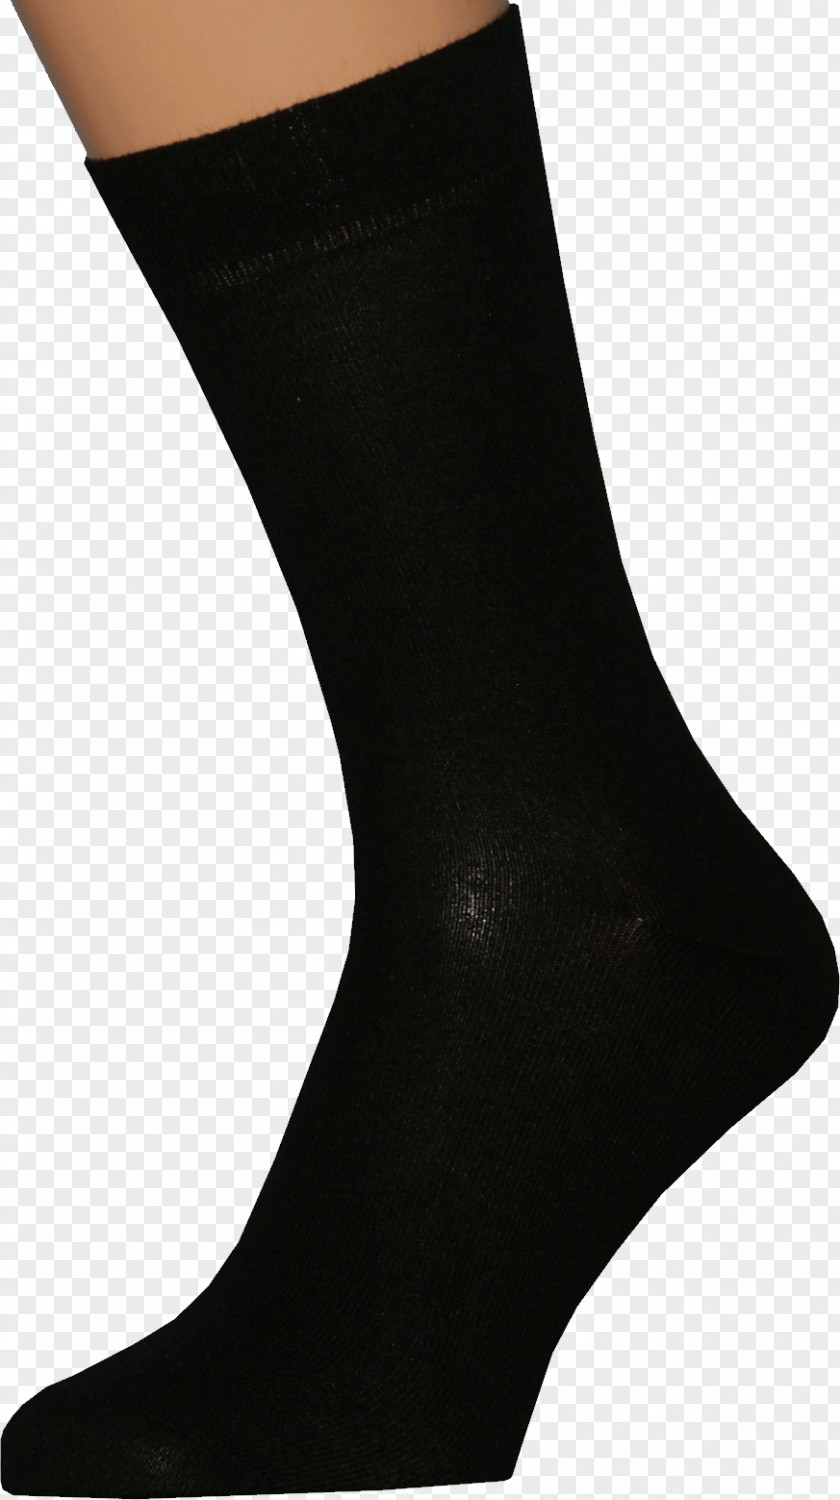 Black Socks Image Knee Highs Stocking Hosiery PNG